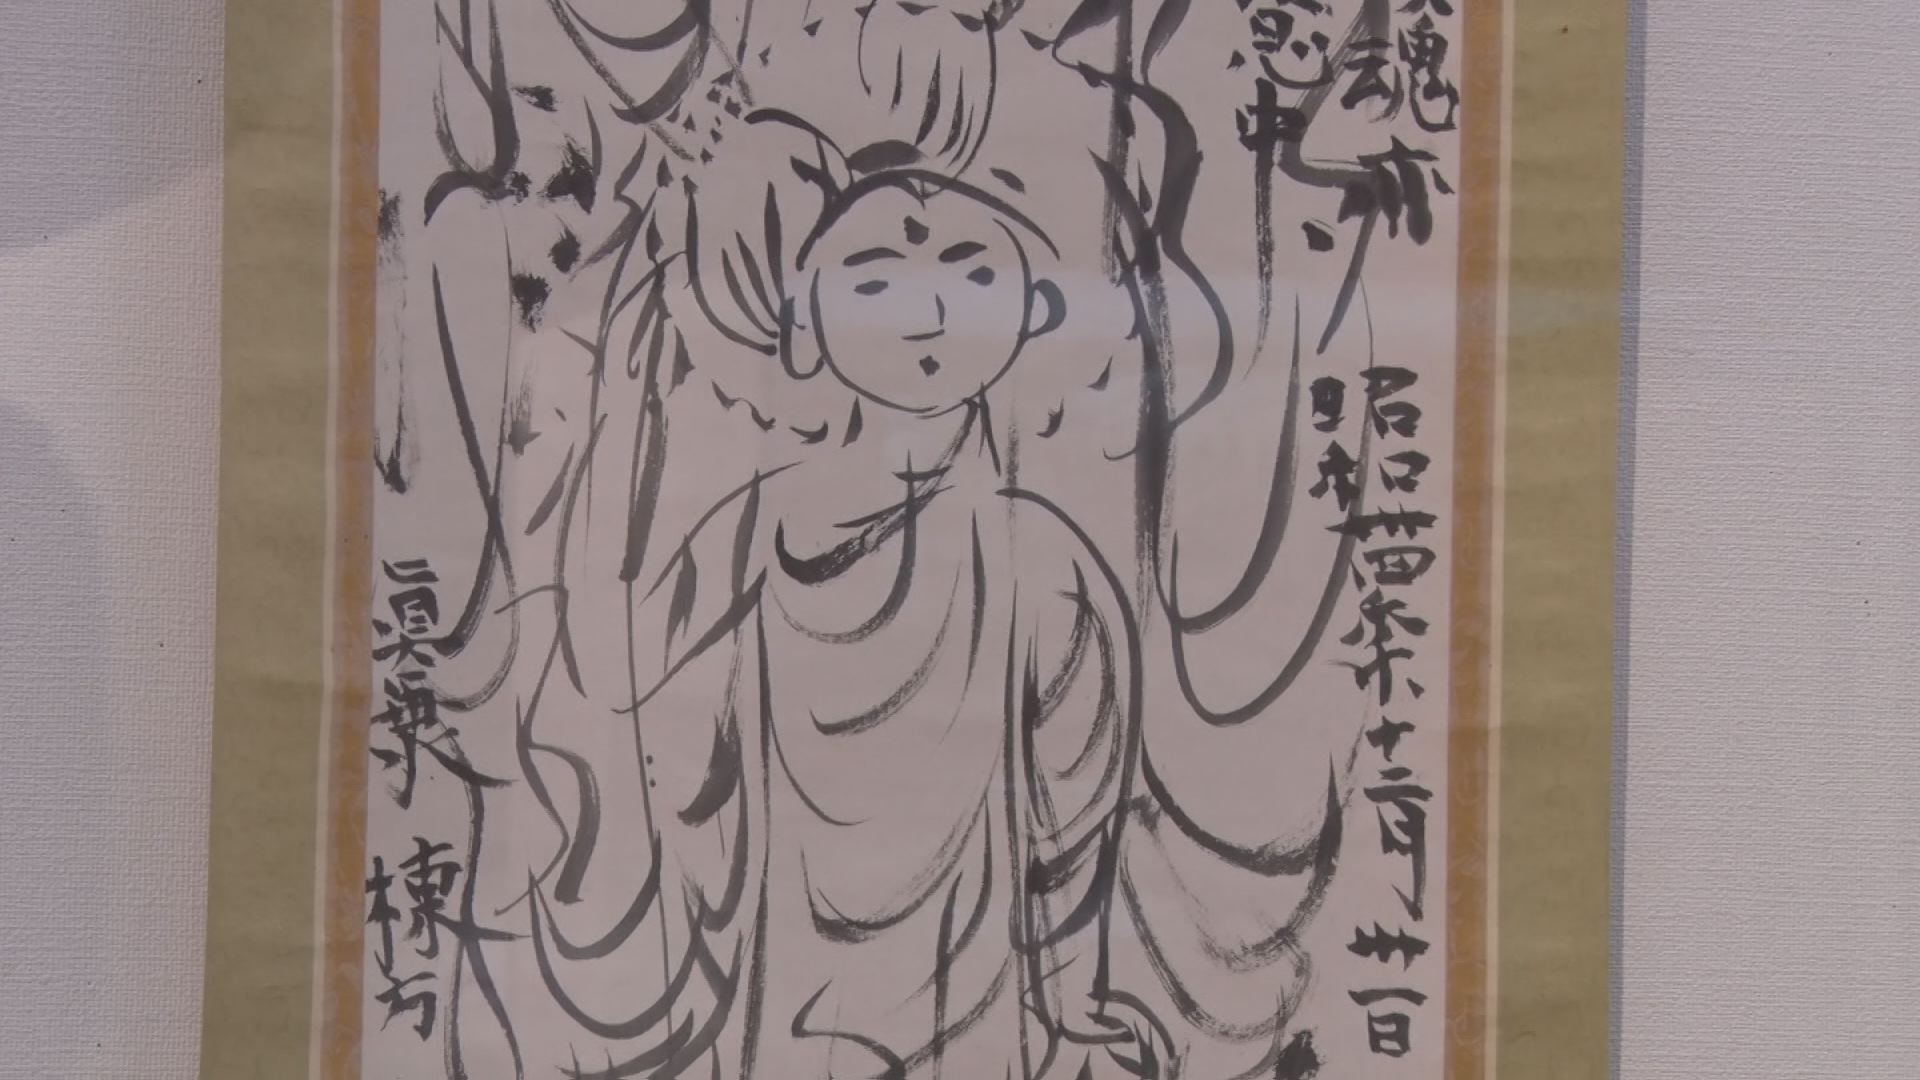 貴重な資料から苦難の歴史まで　石川歴史民俗資料館で開館40周年記念展『たくされた記憶つなげる歴史』を開催